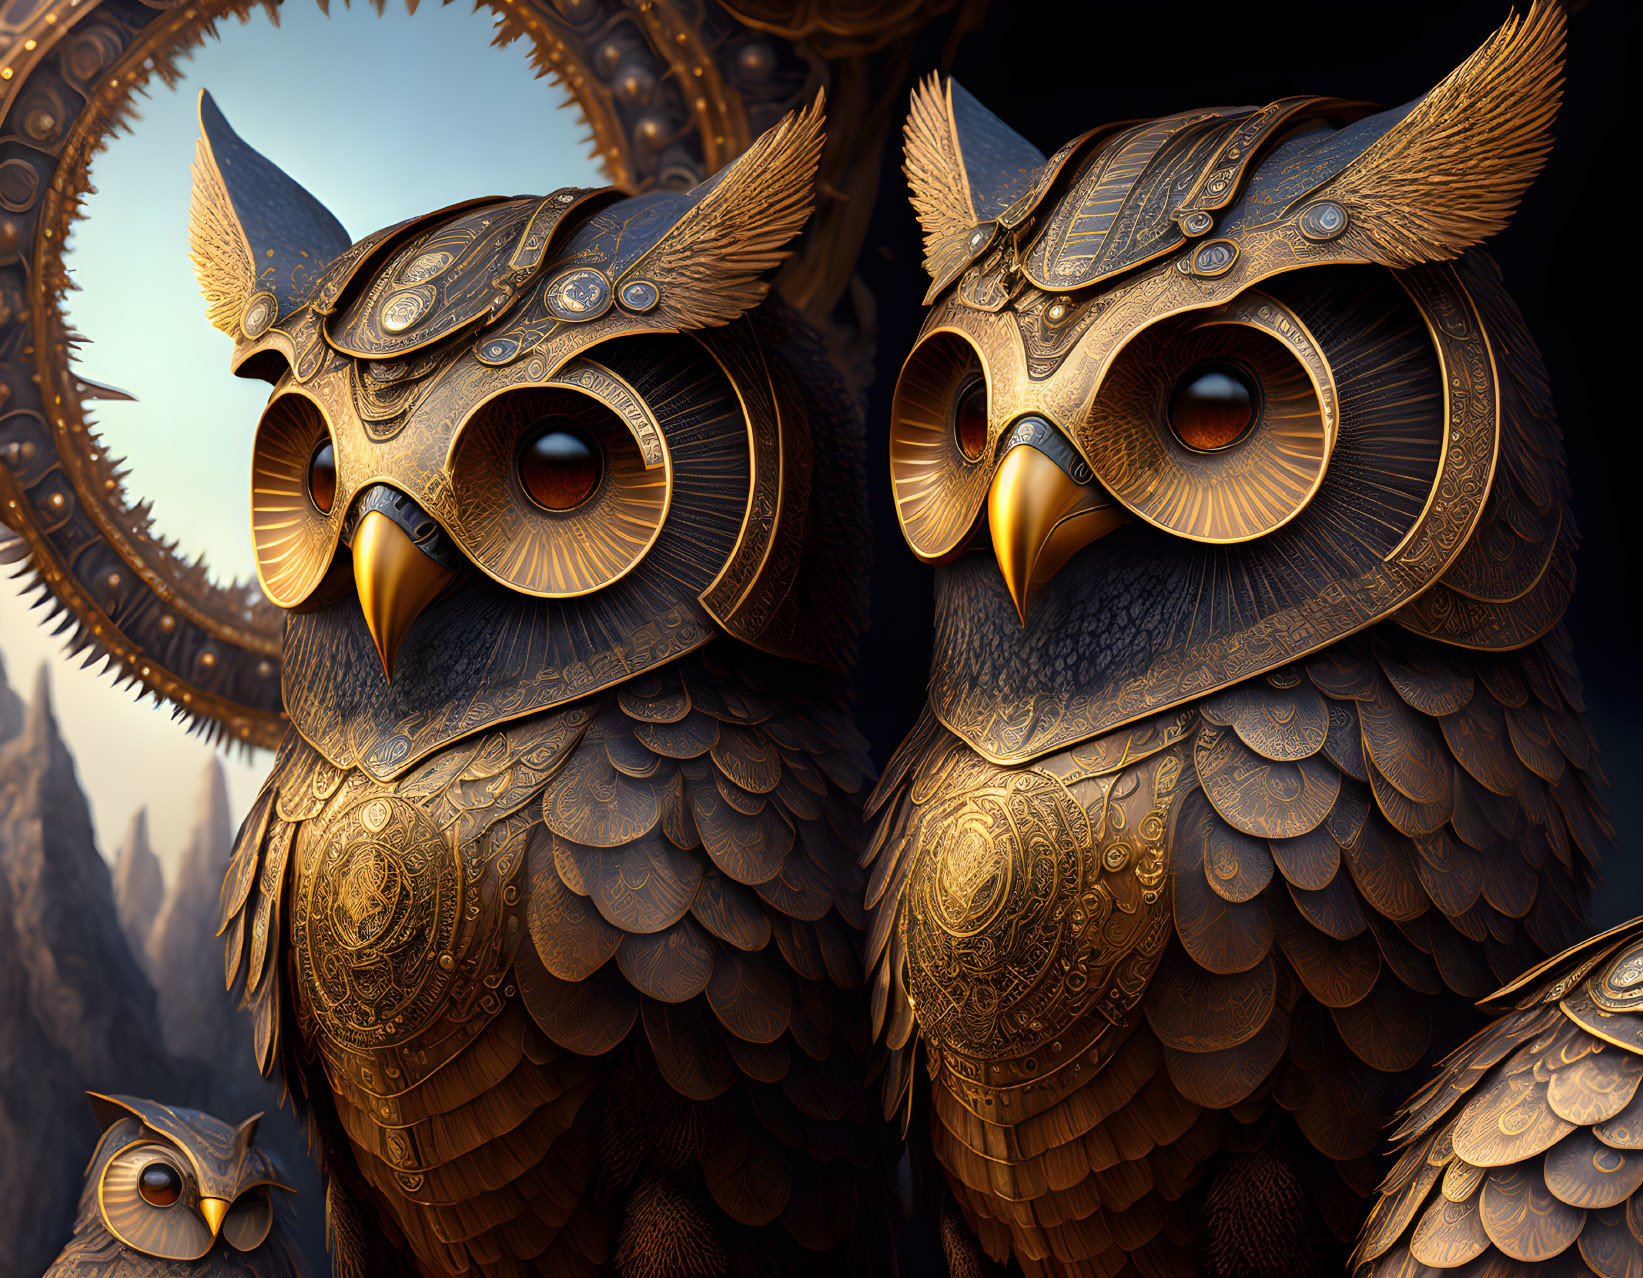 Detailed Steampunk Mechanical Owls Artwork